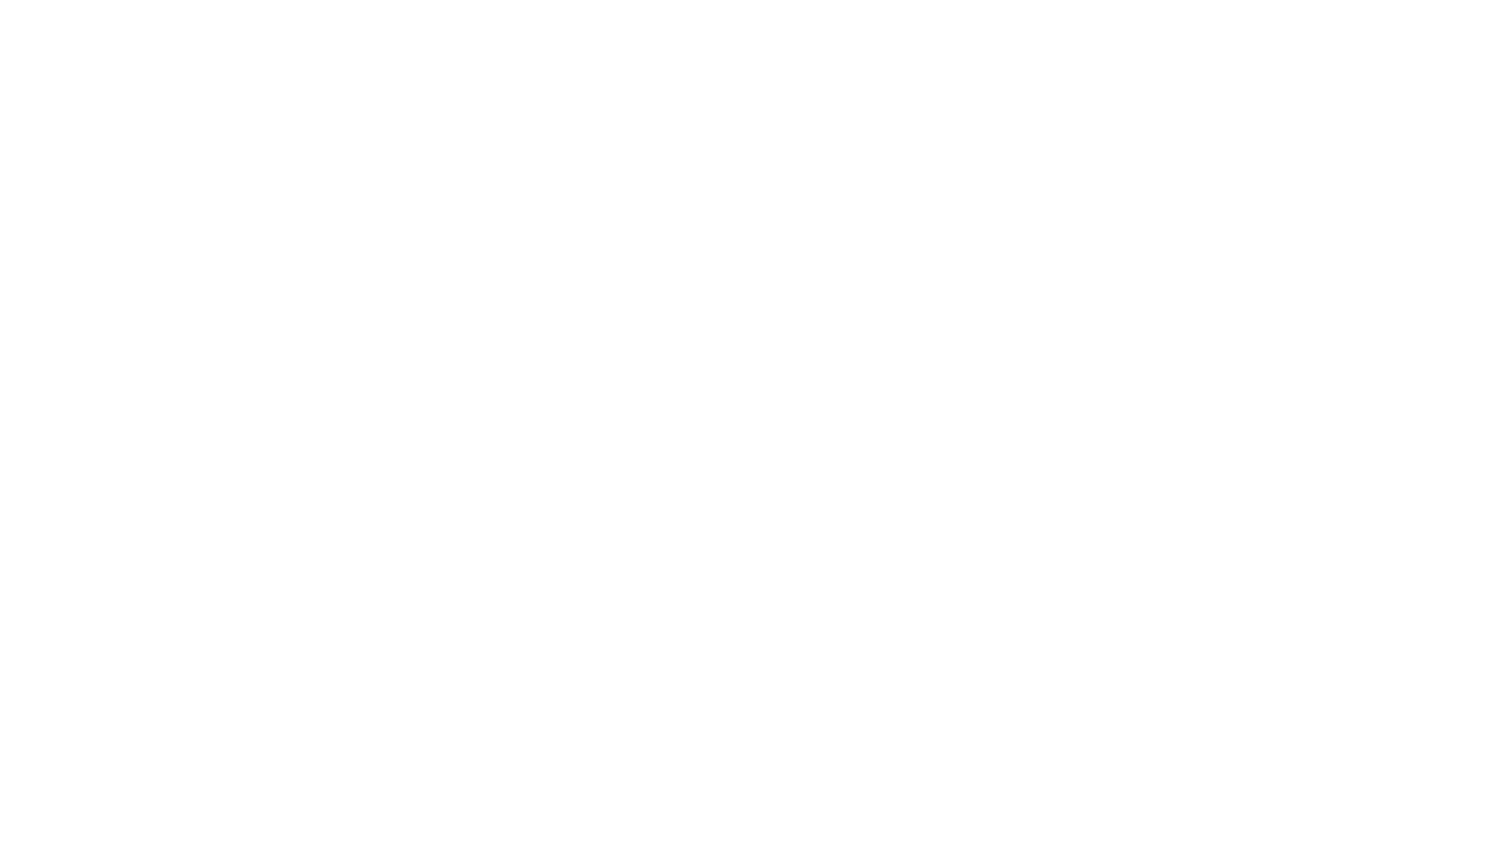 JOSIAHNEWBOLT.COM